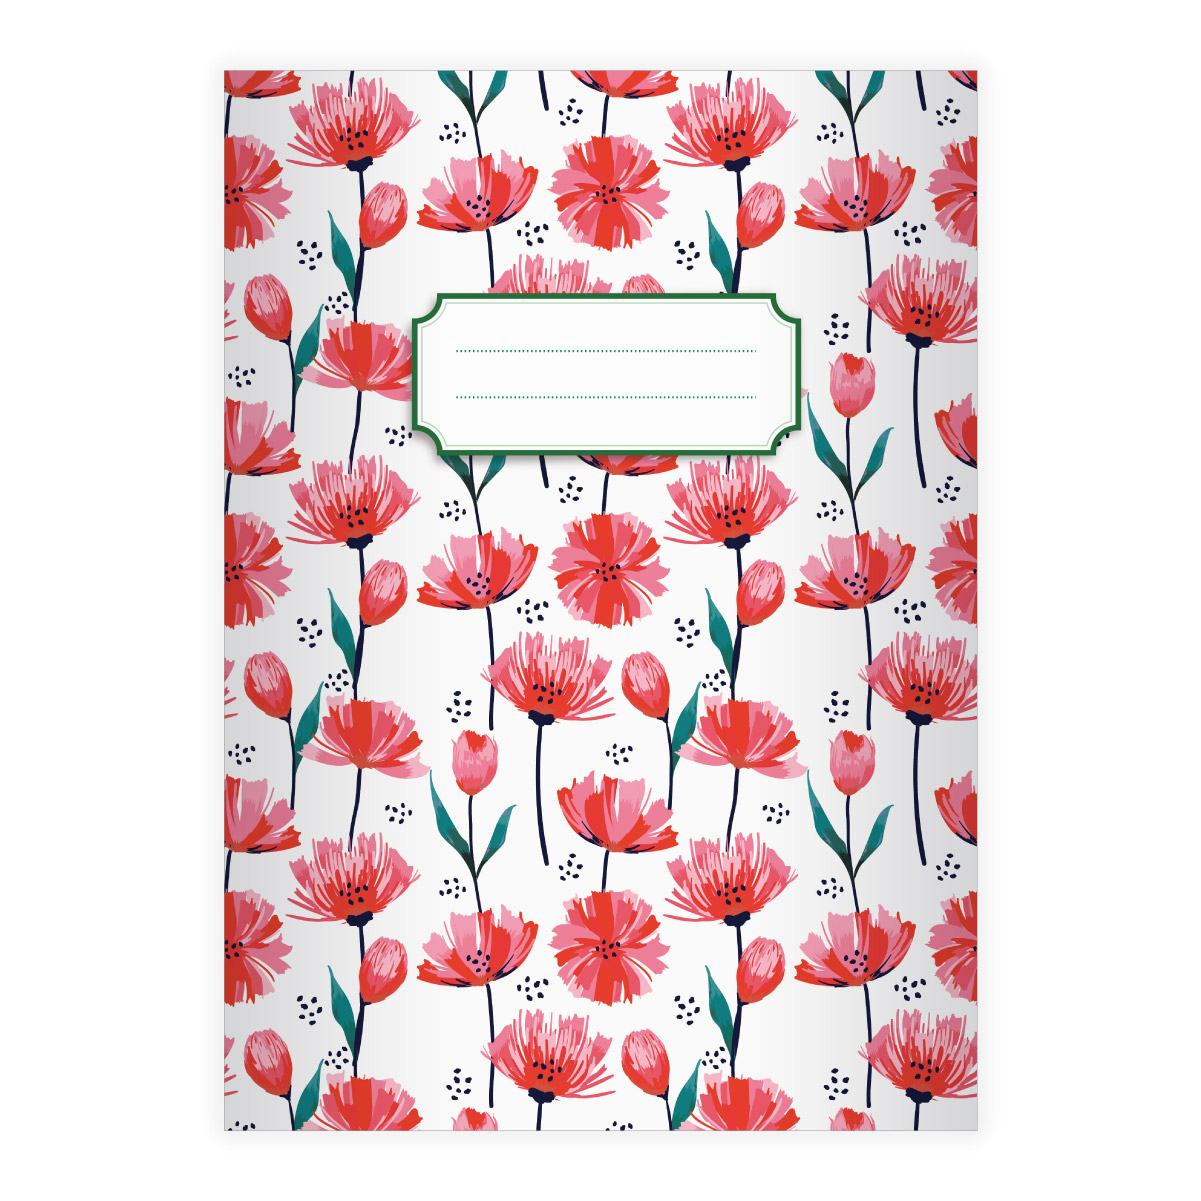 Kartenkaufrausch: Notizheft/ Schulheft mit Tulpen aus unserer floralen Papeterie in rot